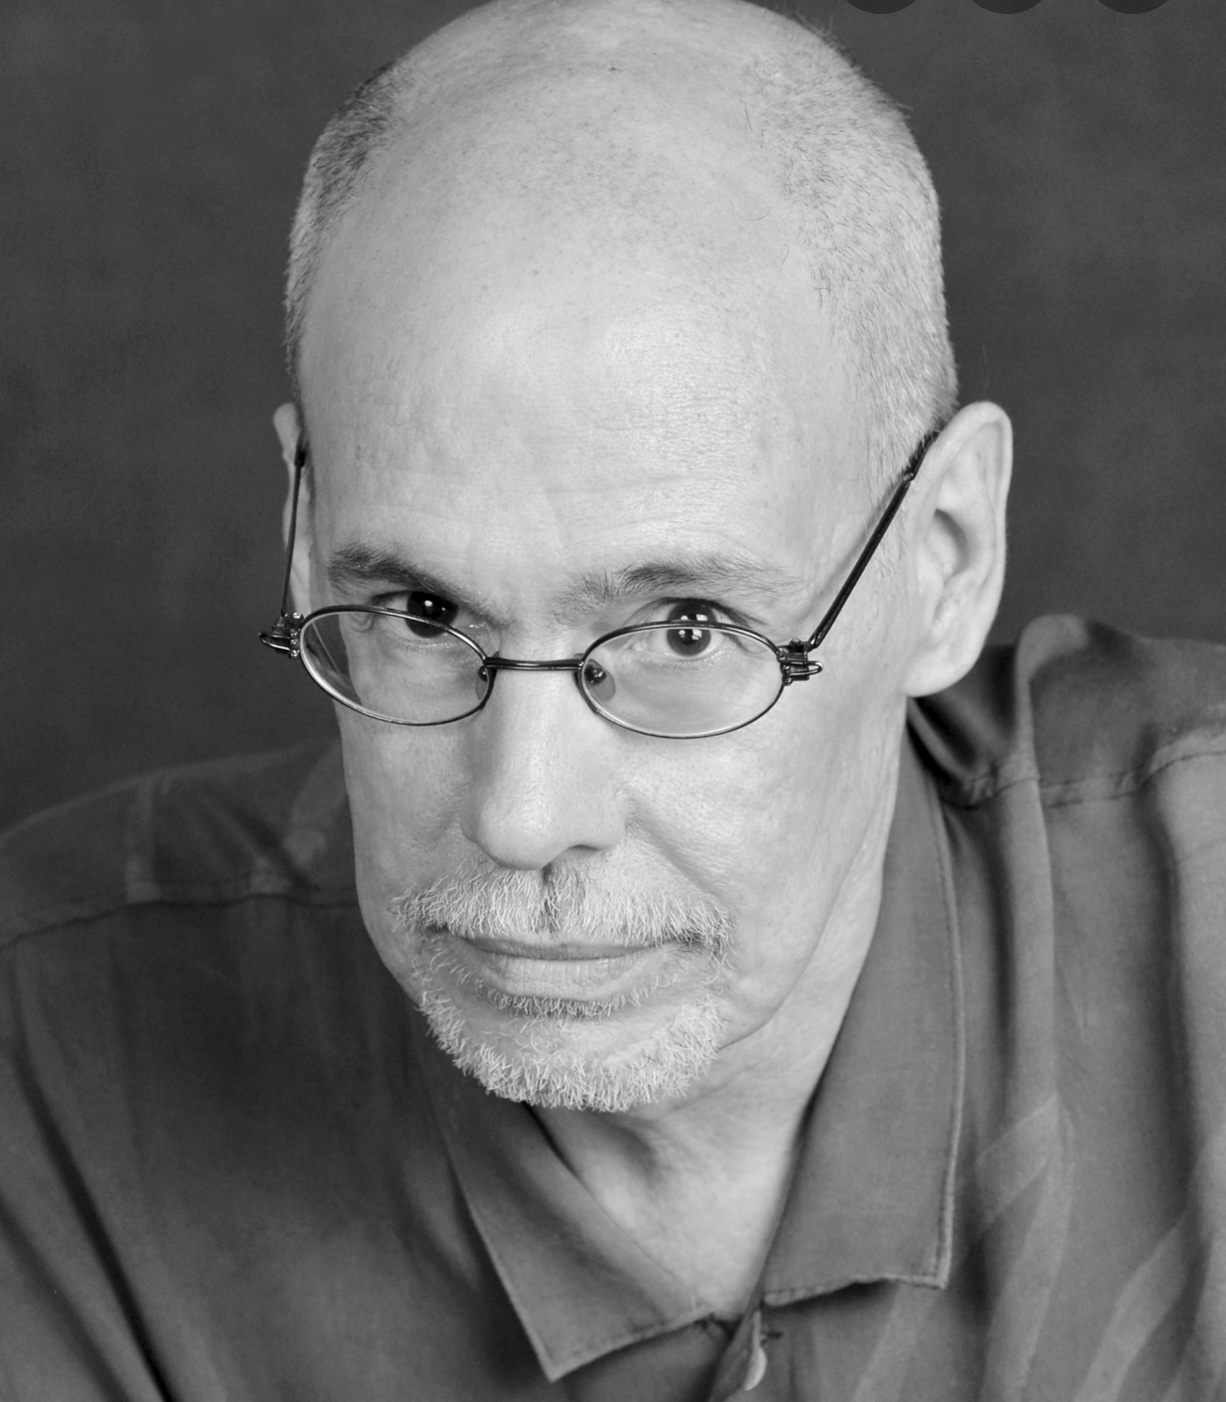 Une photo en noir et blanc d'un homme chauve à lunettes, évoquant la poésie.